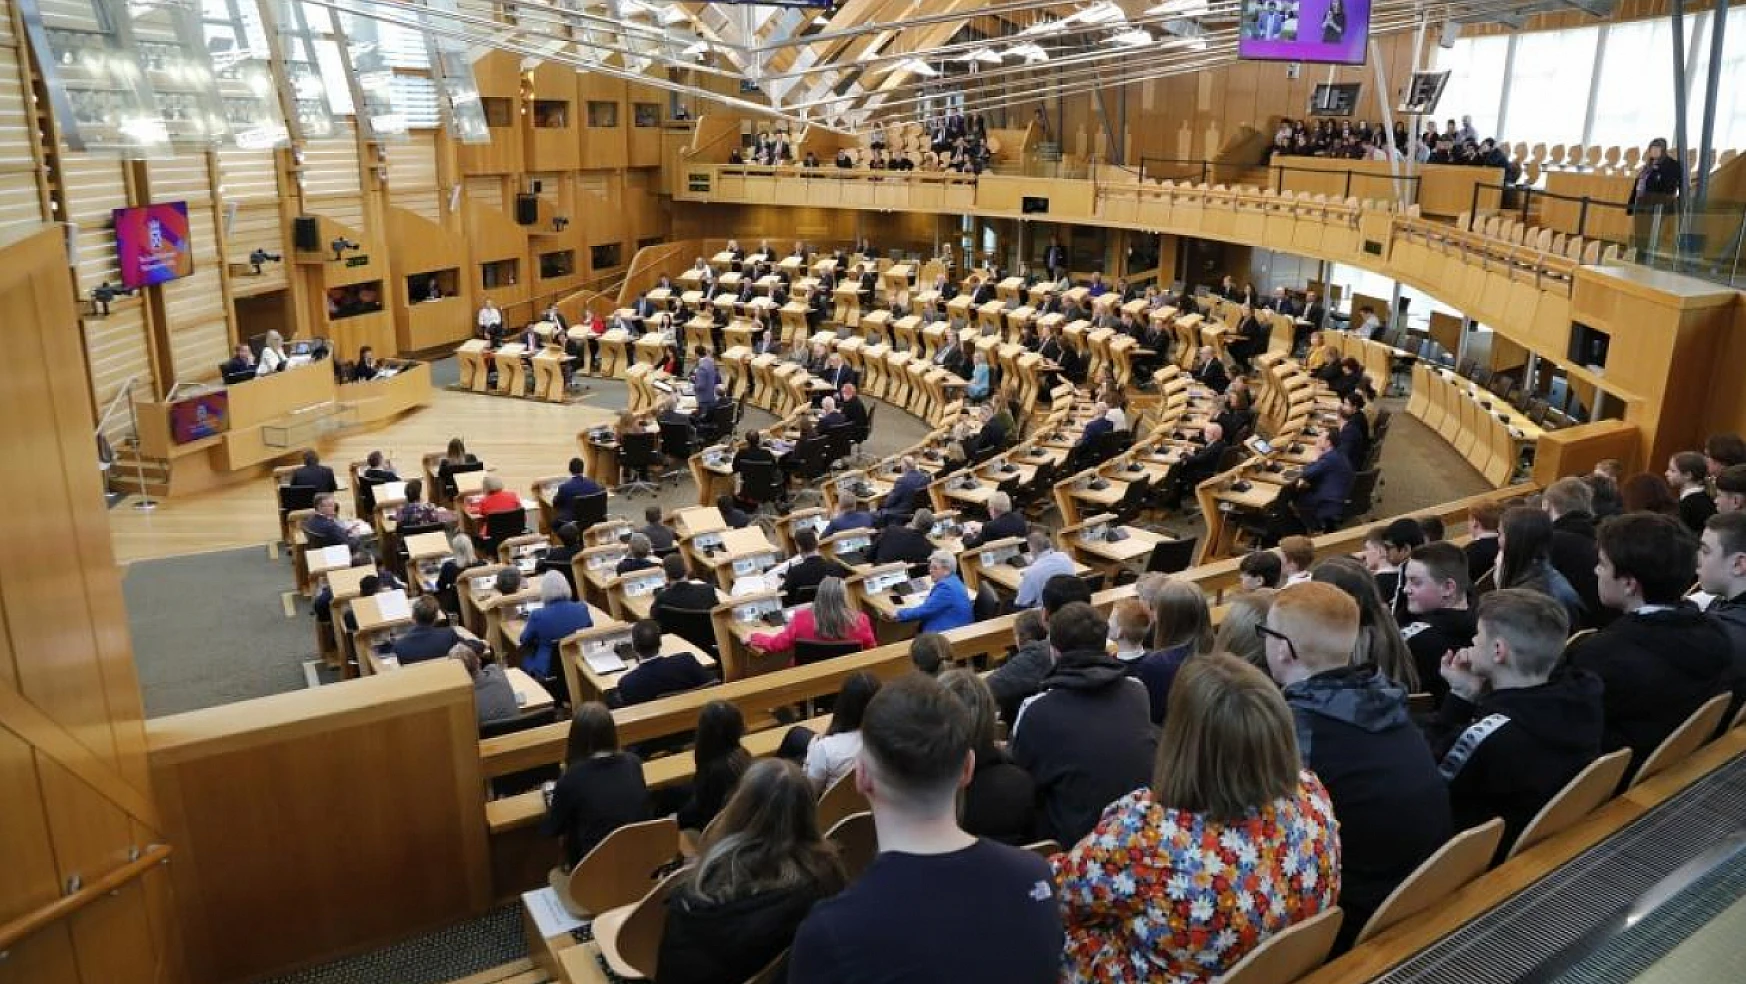 İskoçya parlamentosundan Gazze için ateşkes çağrısı!... Önerge 28'e karşı 90 oyla kabul edildi!...